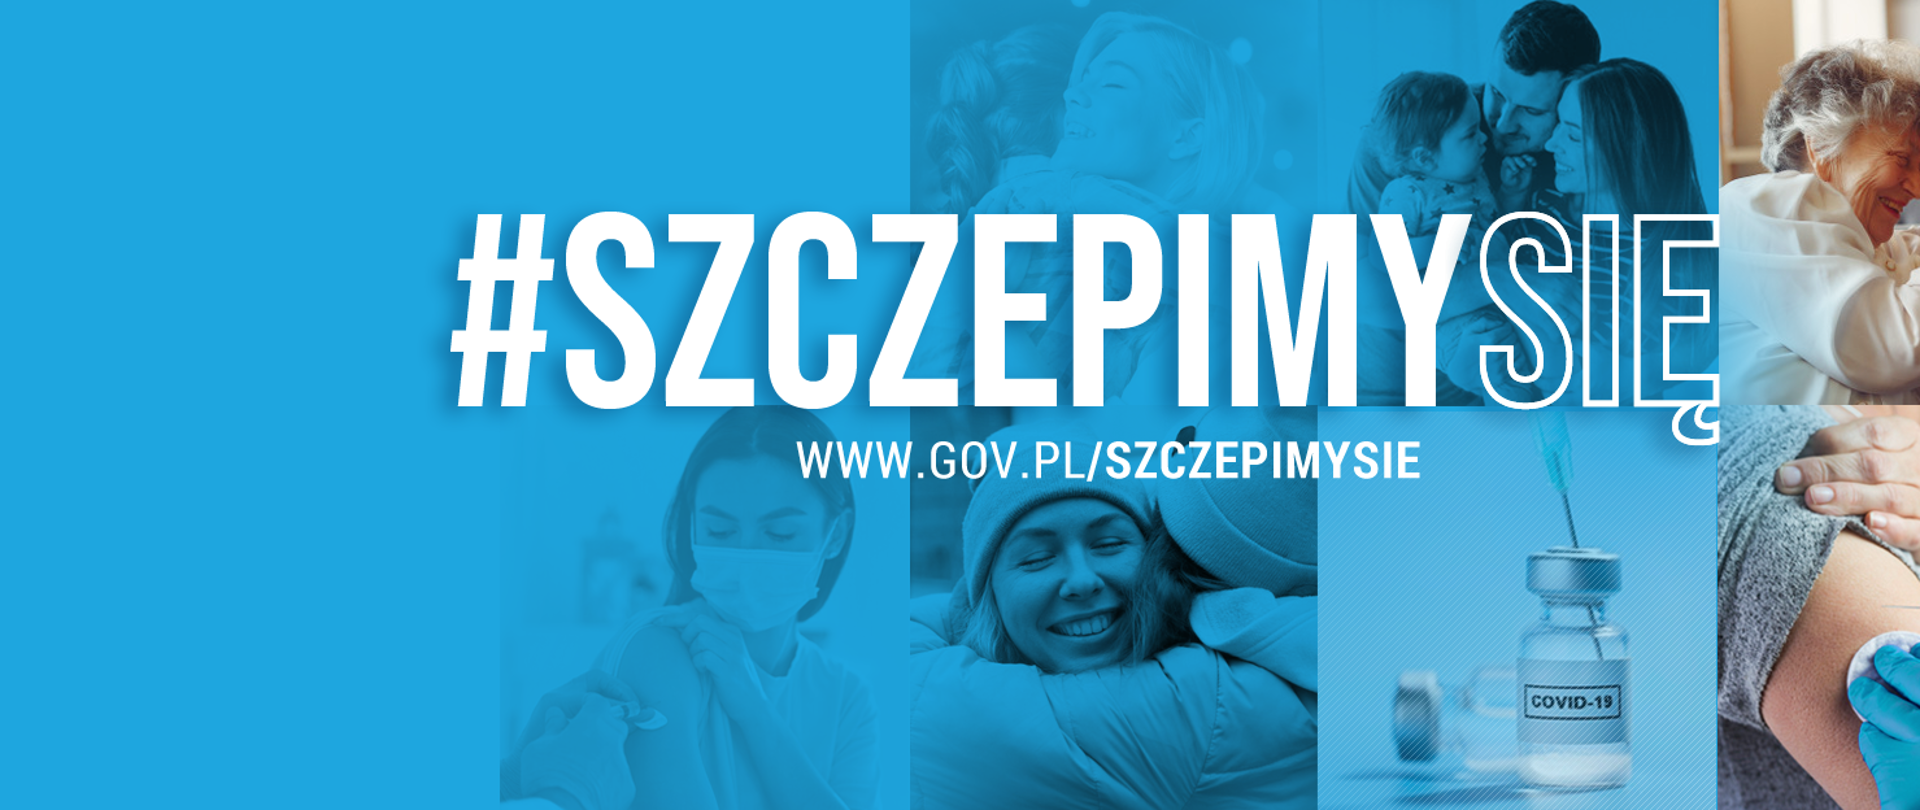 grafika na niebieskim tle z napisem #szczepimysie, poniżej napis www.gov.pl/szczepimysie